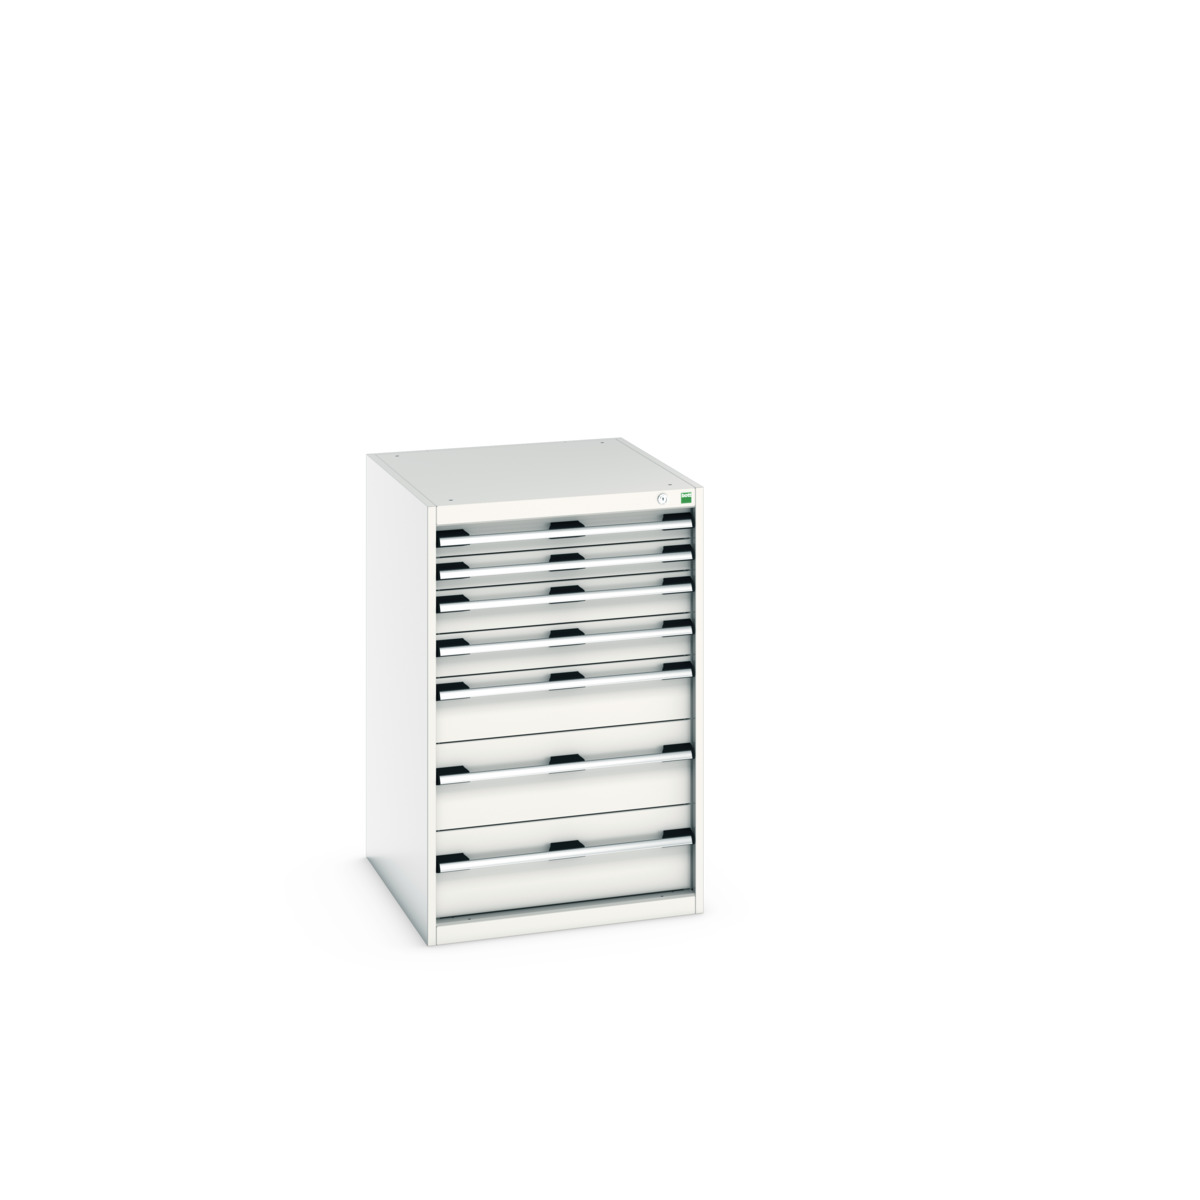 40027031.16V - cubio drawer cabinet